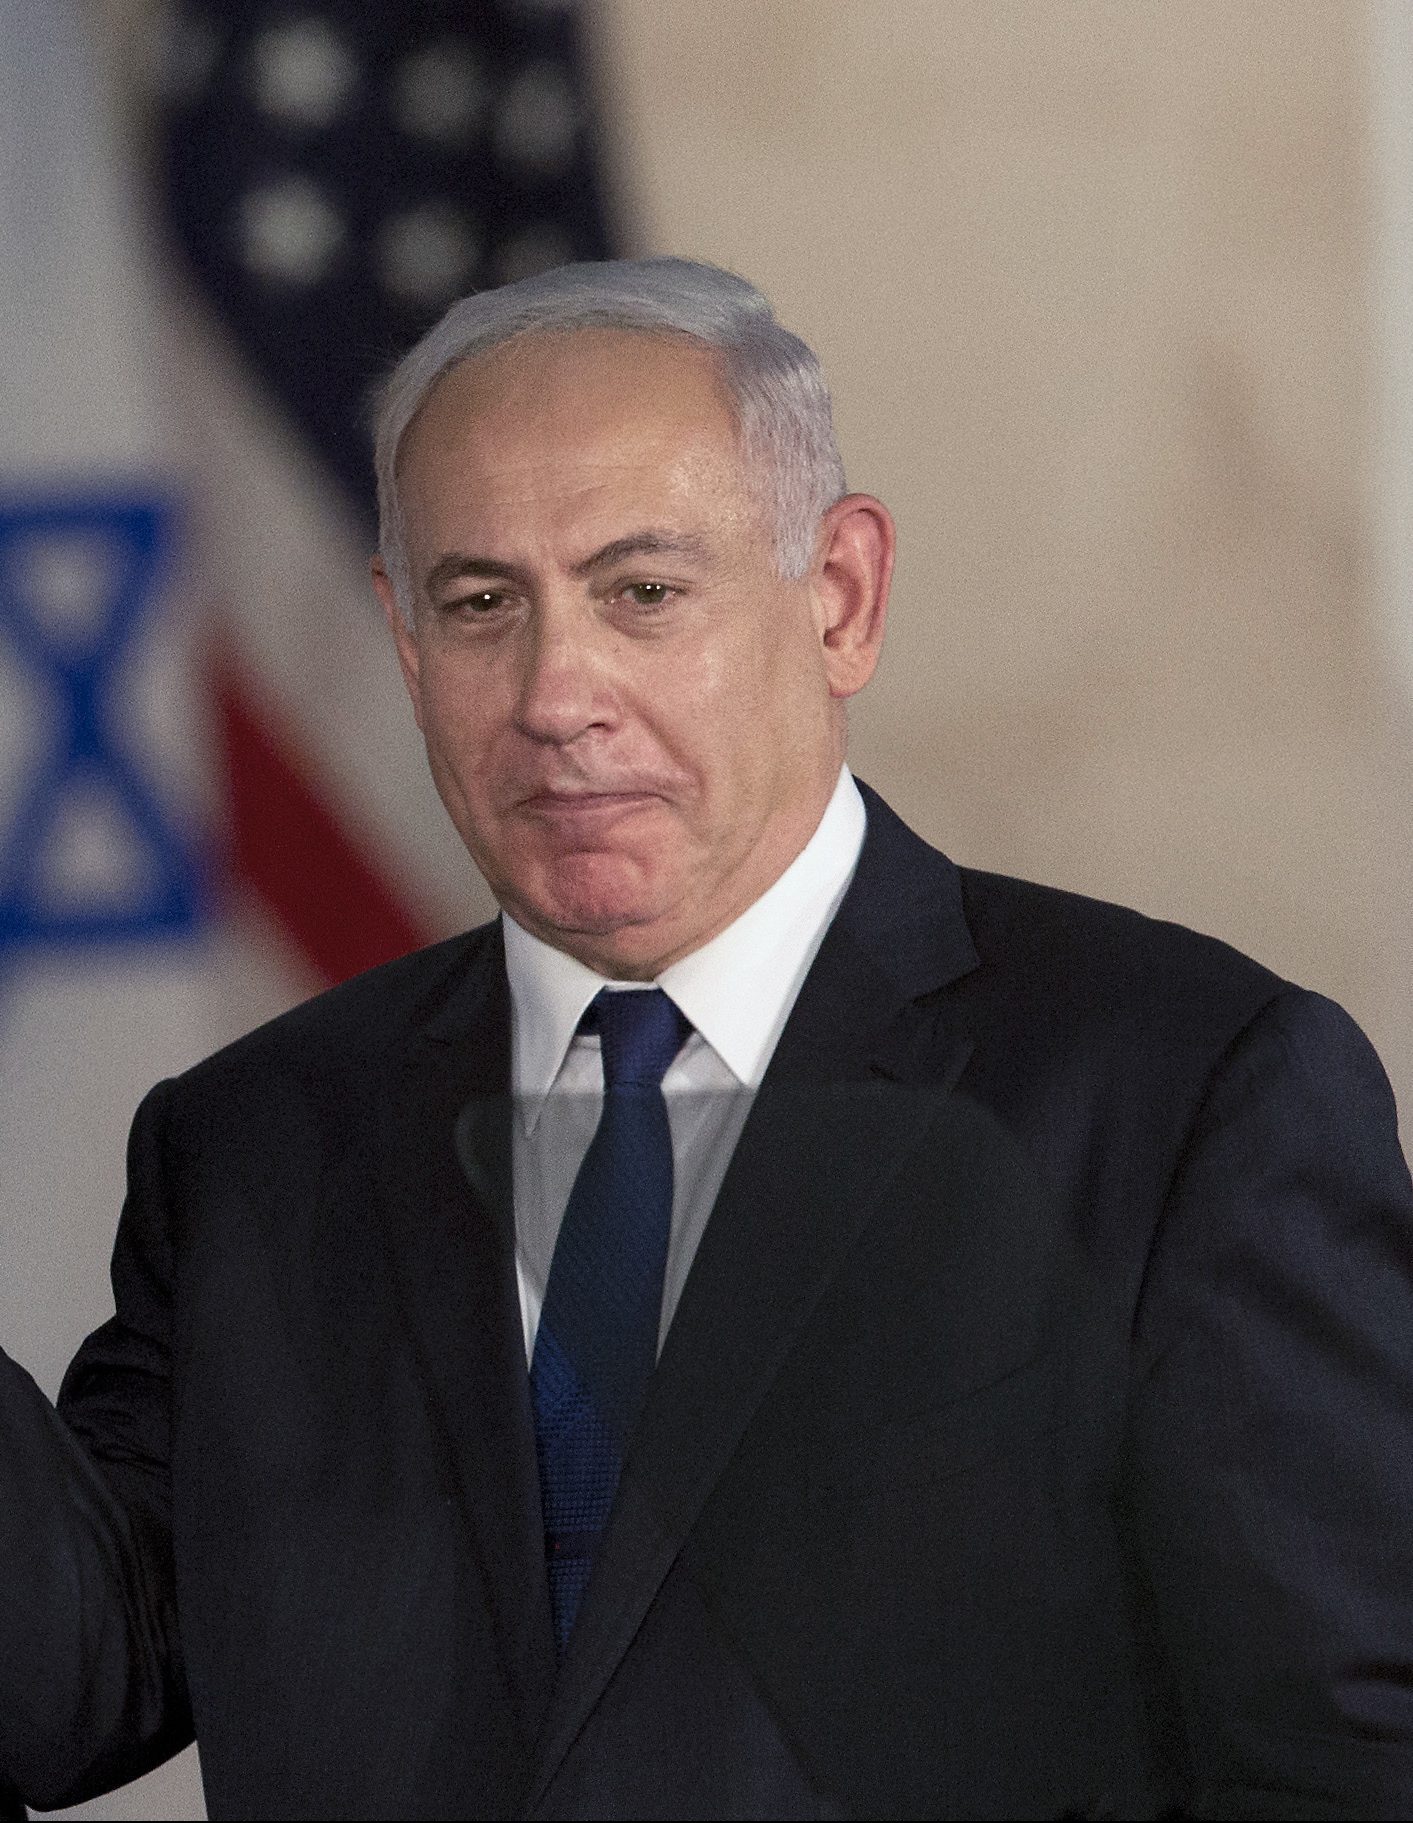 Donald Trump, desant diplomatic în Israel pentru deschiderea ambasadei SUA la Ierusalim